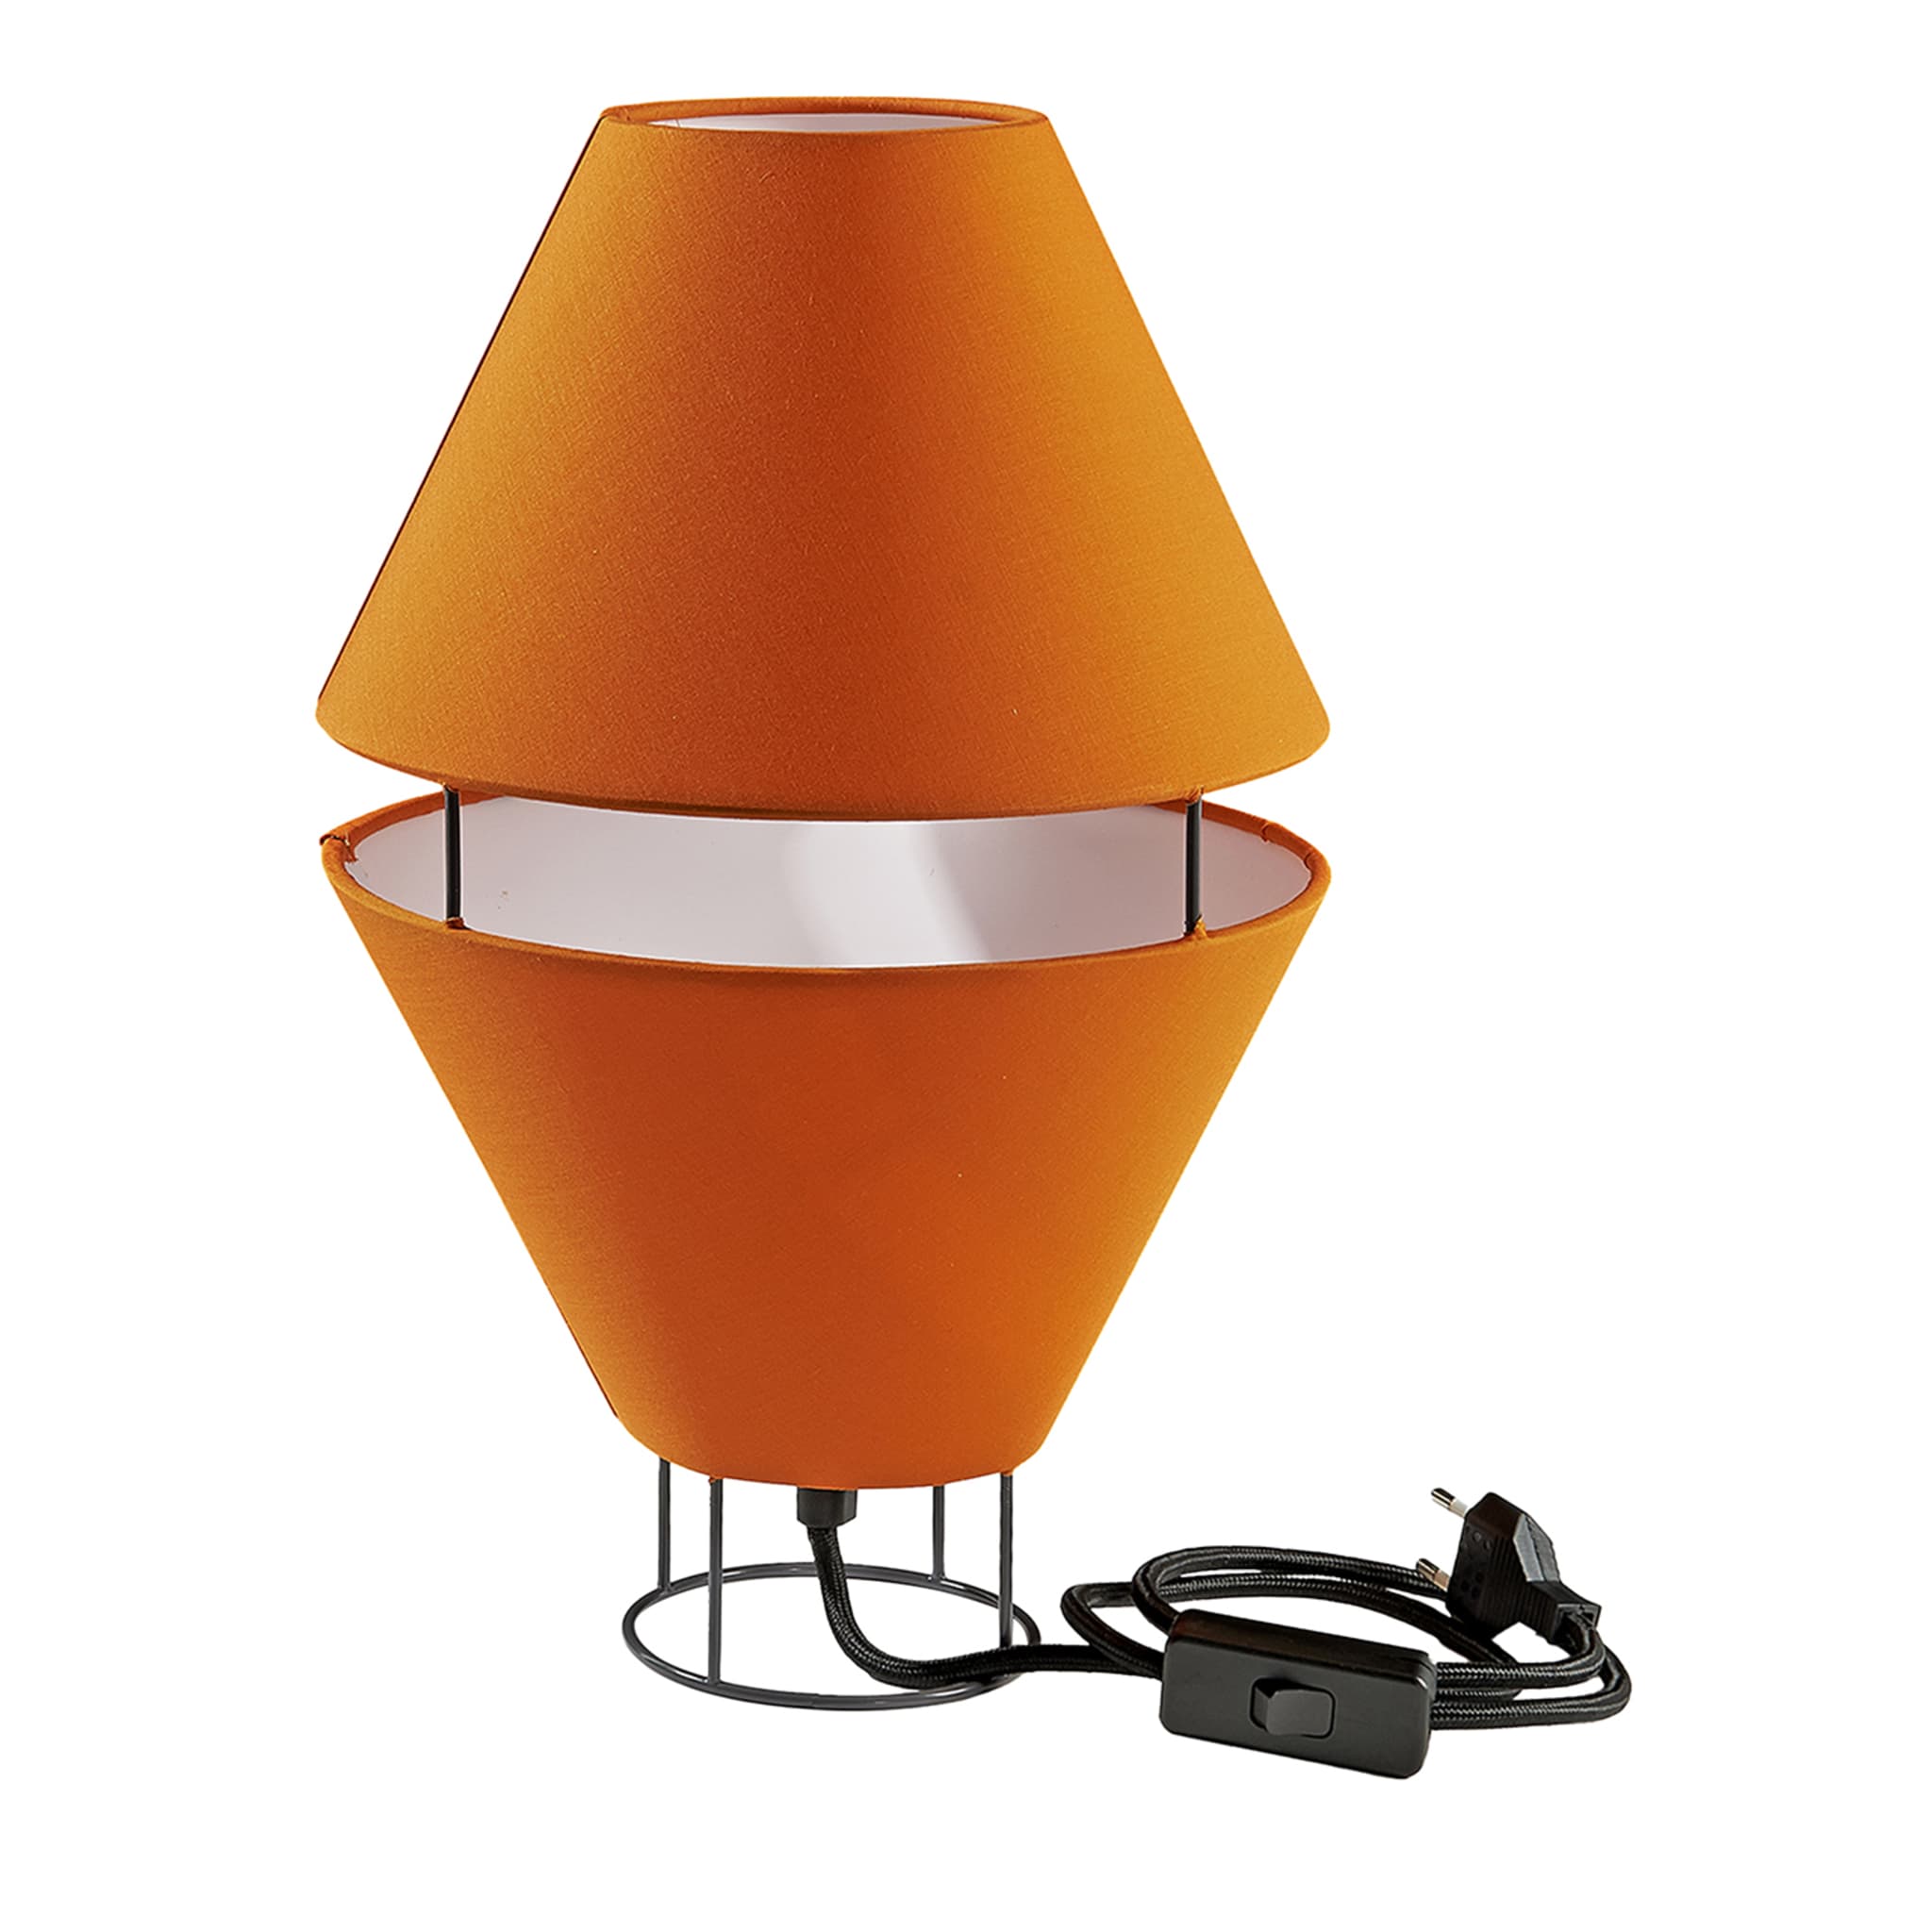 Balloon Rust-Orange & Gray Table Lamp by Giorgia Zanellato - Alternative view 1